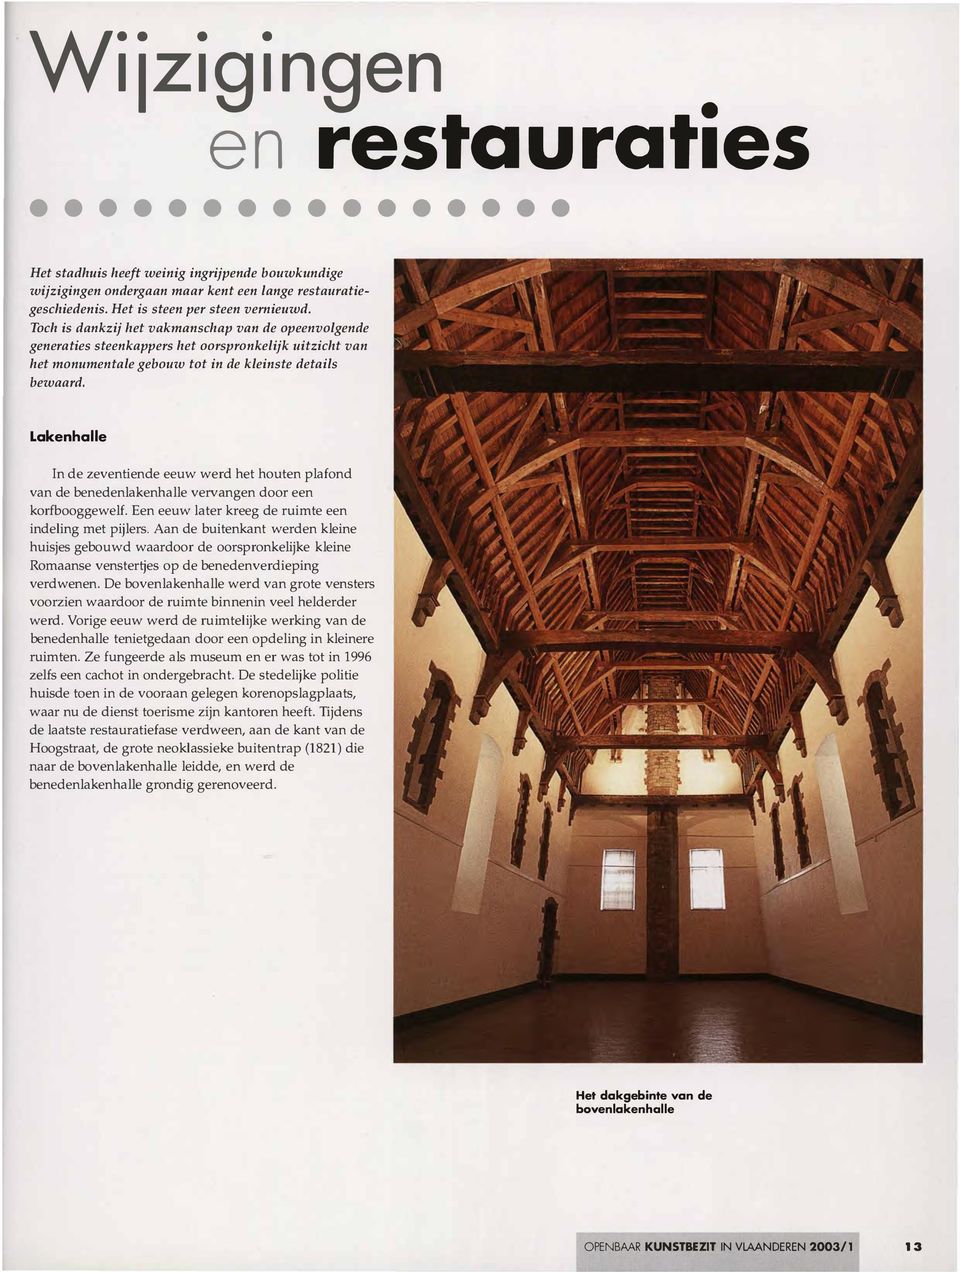 Lakenhalle n de zeventiende eeuw werd het houten plafond van de benedenlakenhalle vervangen door een korfbooggewelf. Een eeuw later kreeg de ruimte een indeling met pijlers.